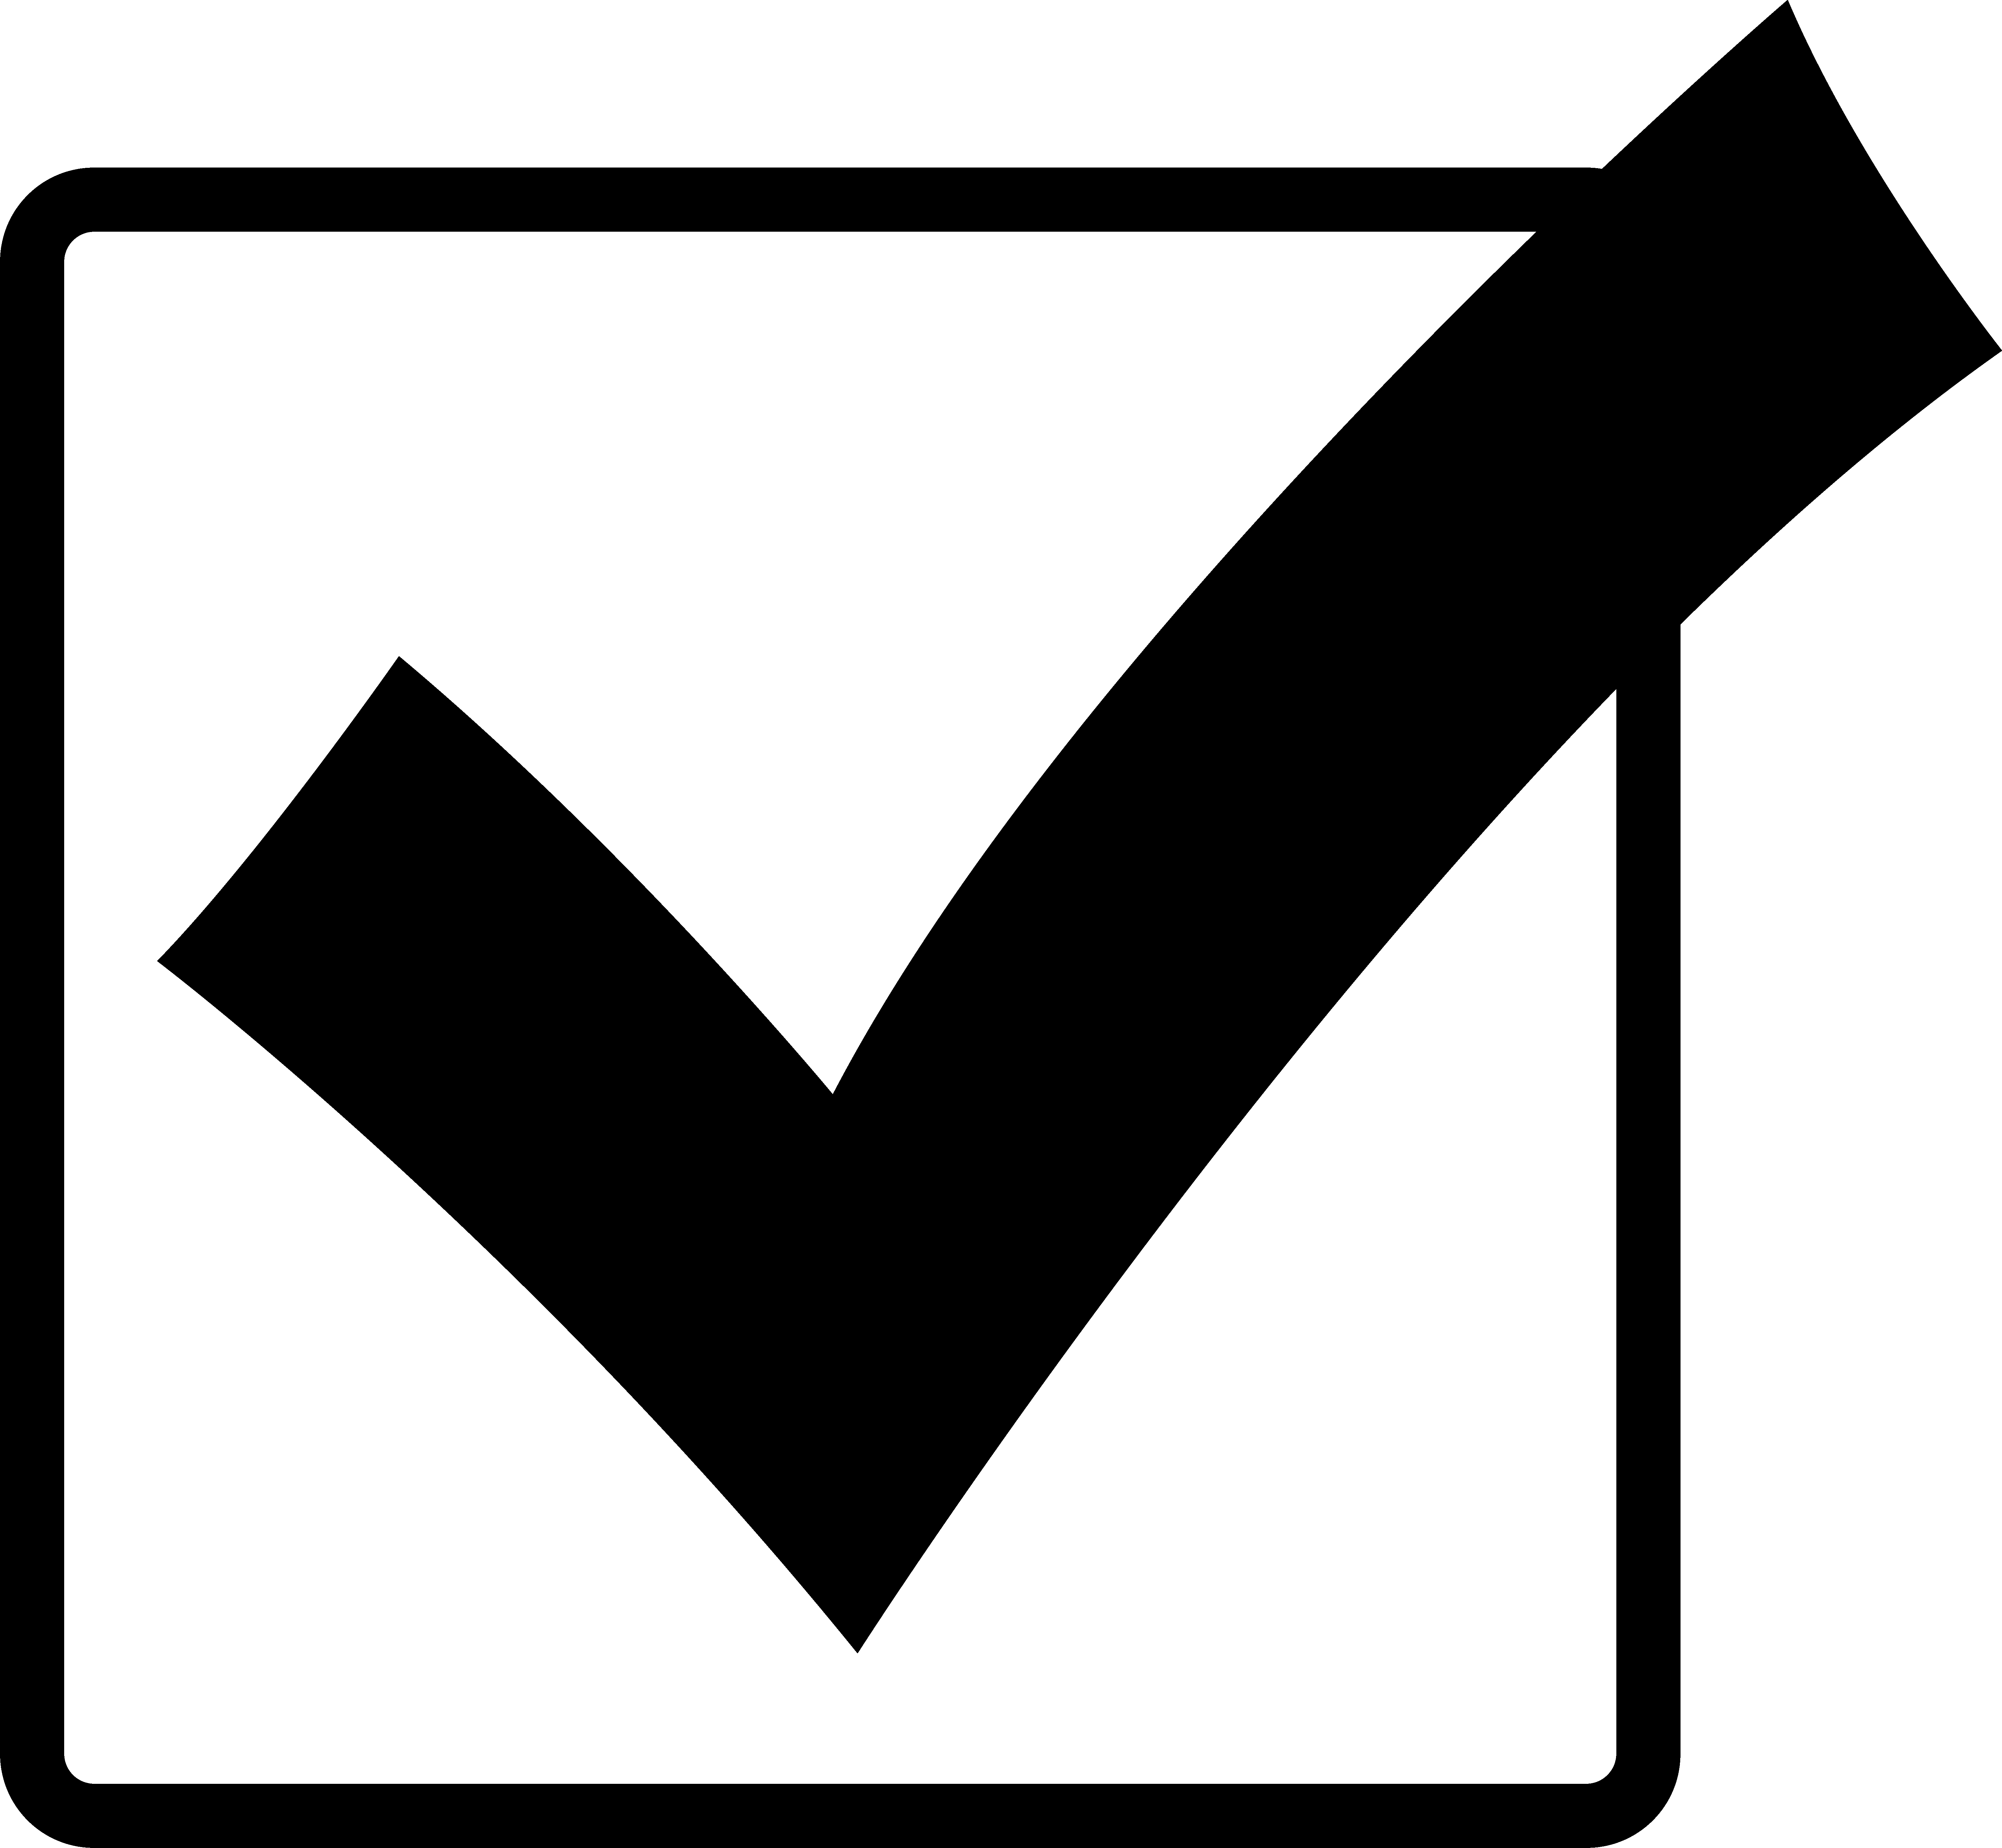 Black Check Mark in Box - Free Clip Art